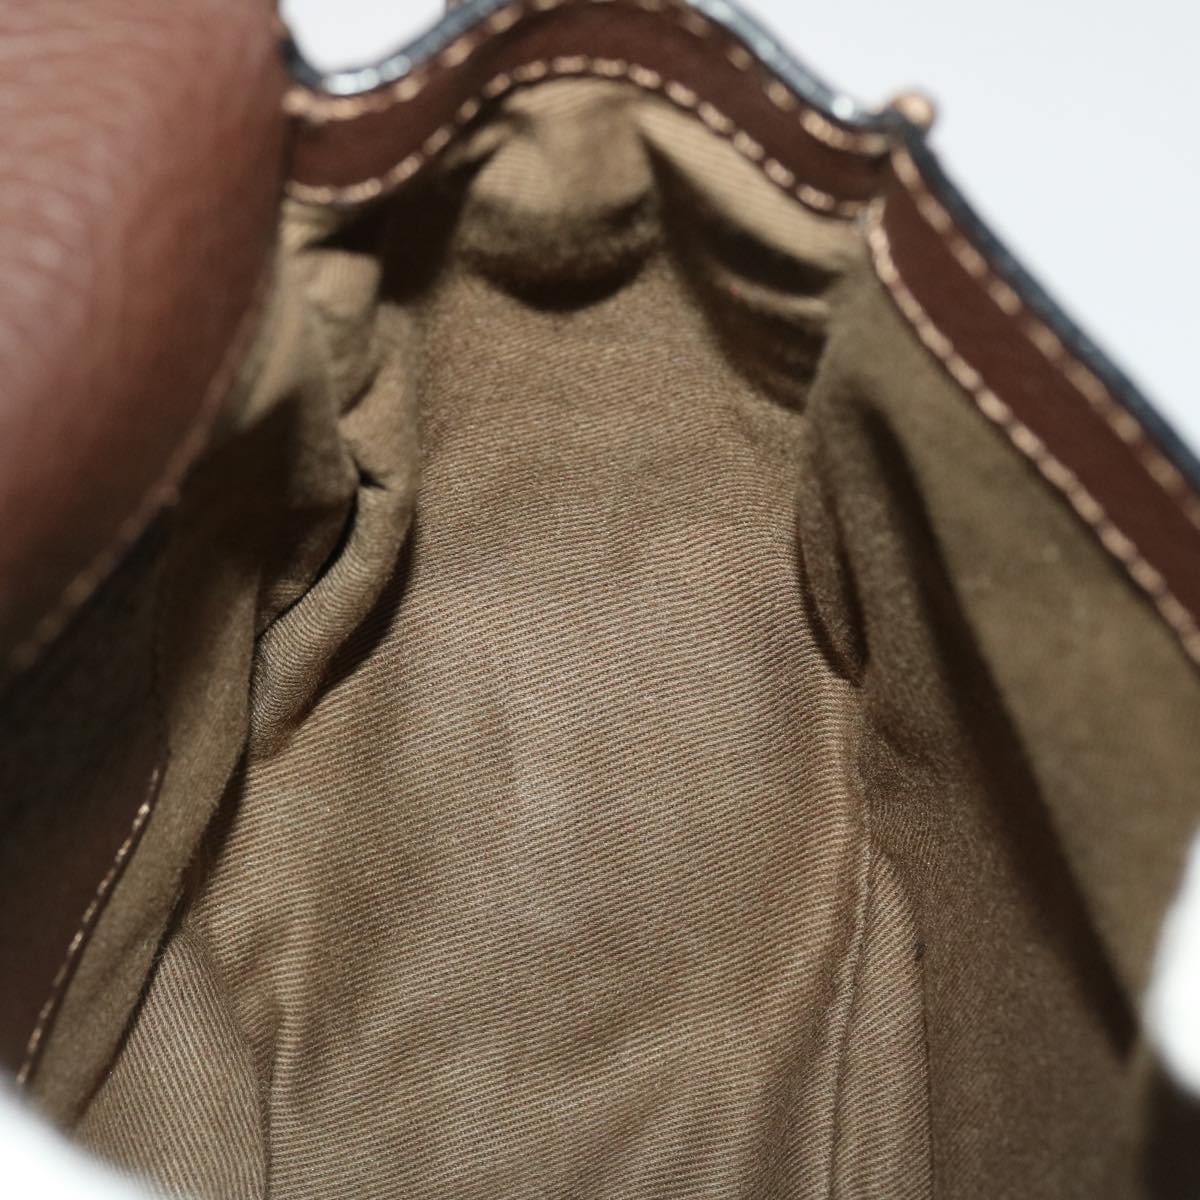 Chloe Saddle Bag Mercy Shoulder Bag Leather Brown Auth 45716